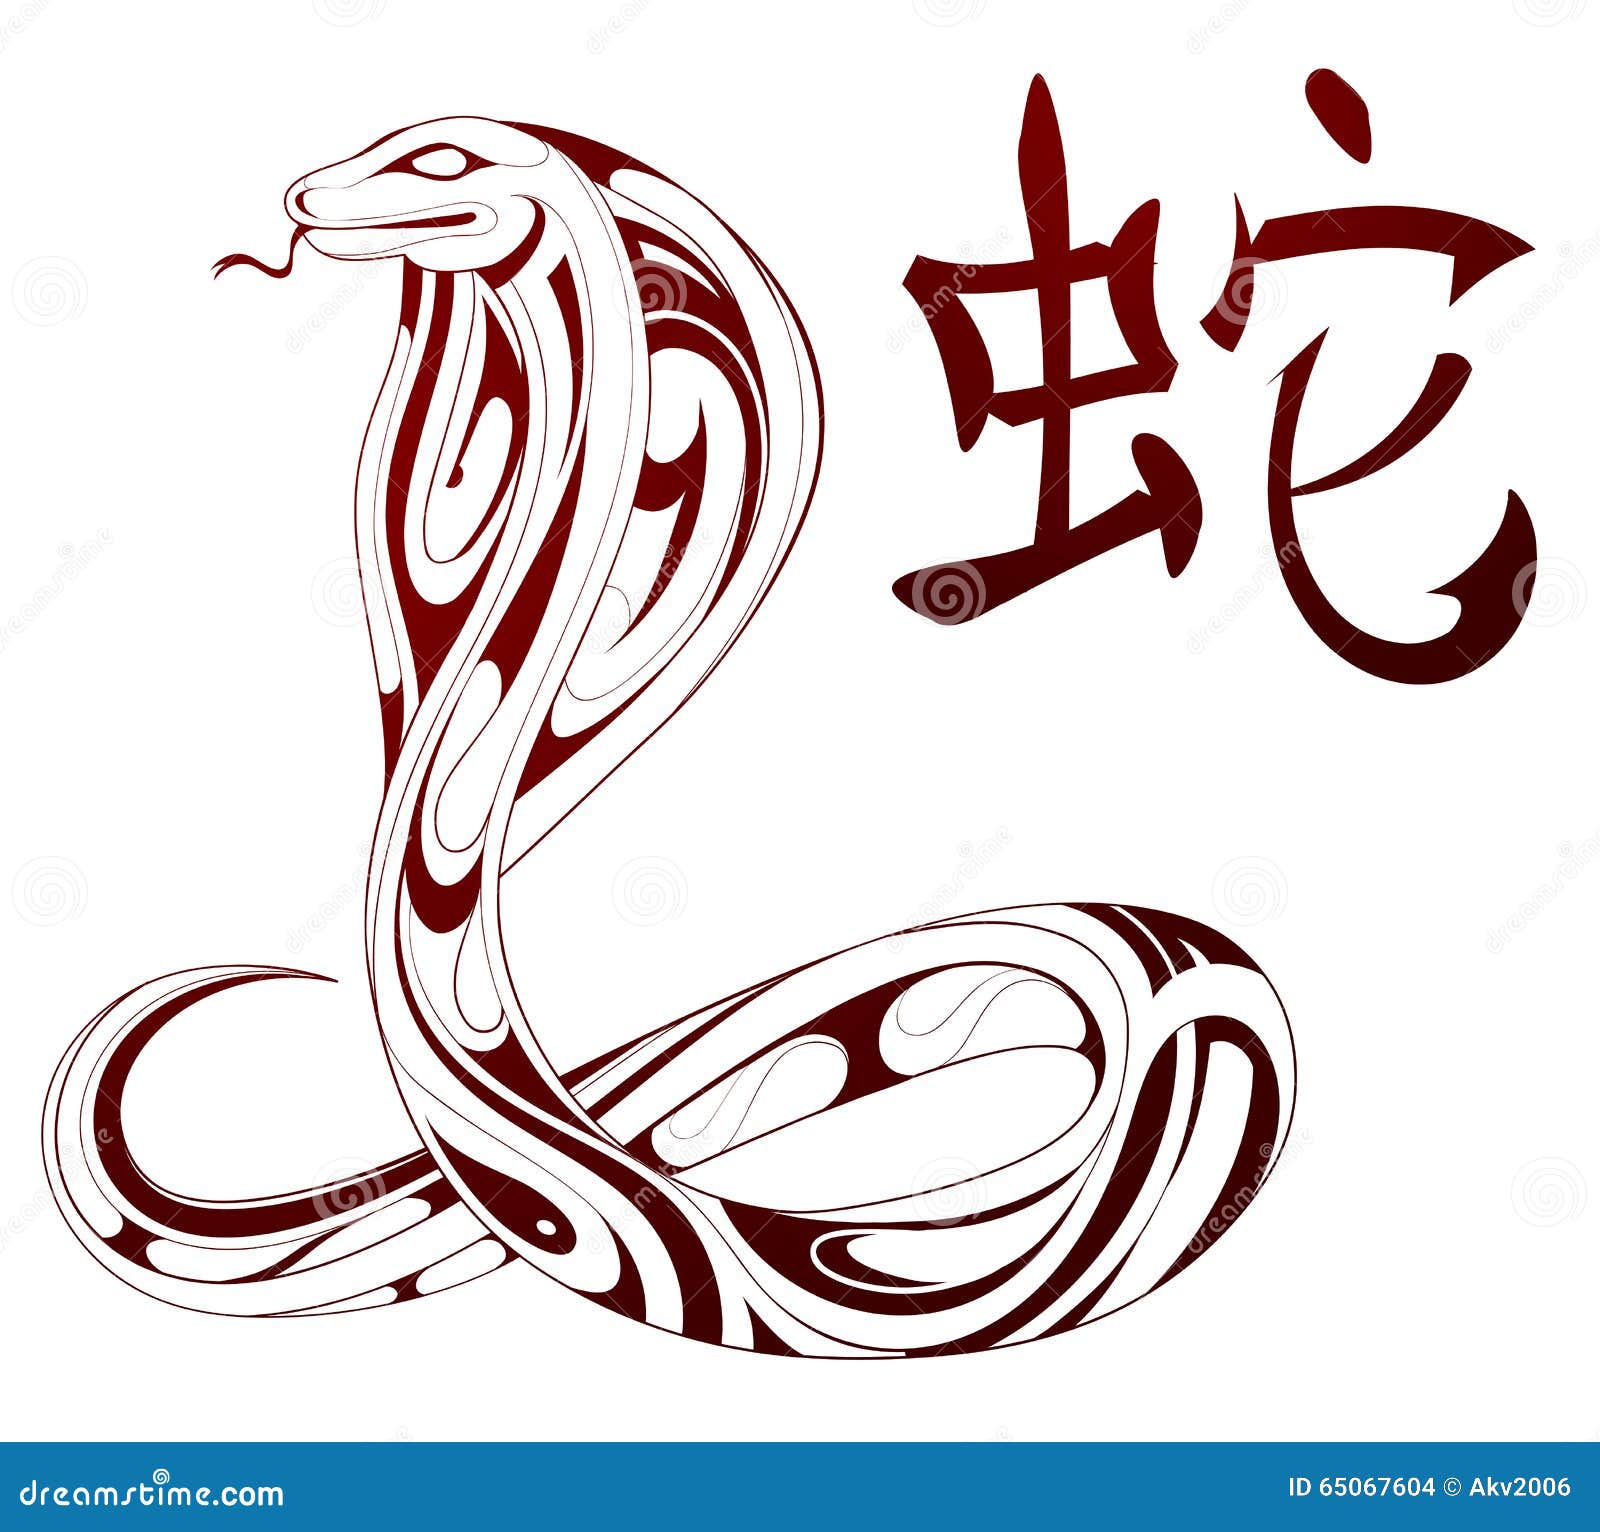 Рыба в год змеи. Иероглиф змея на китайском. Змея китайский символ. Иероглиф змея на японском. Японский символ змеи.